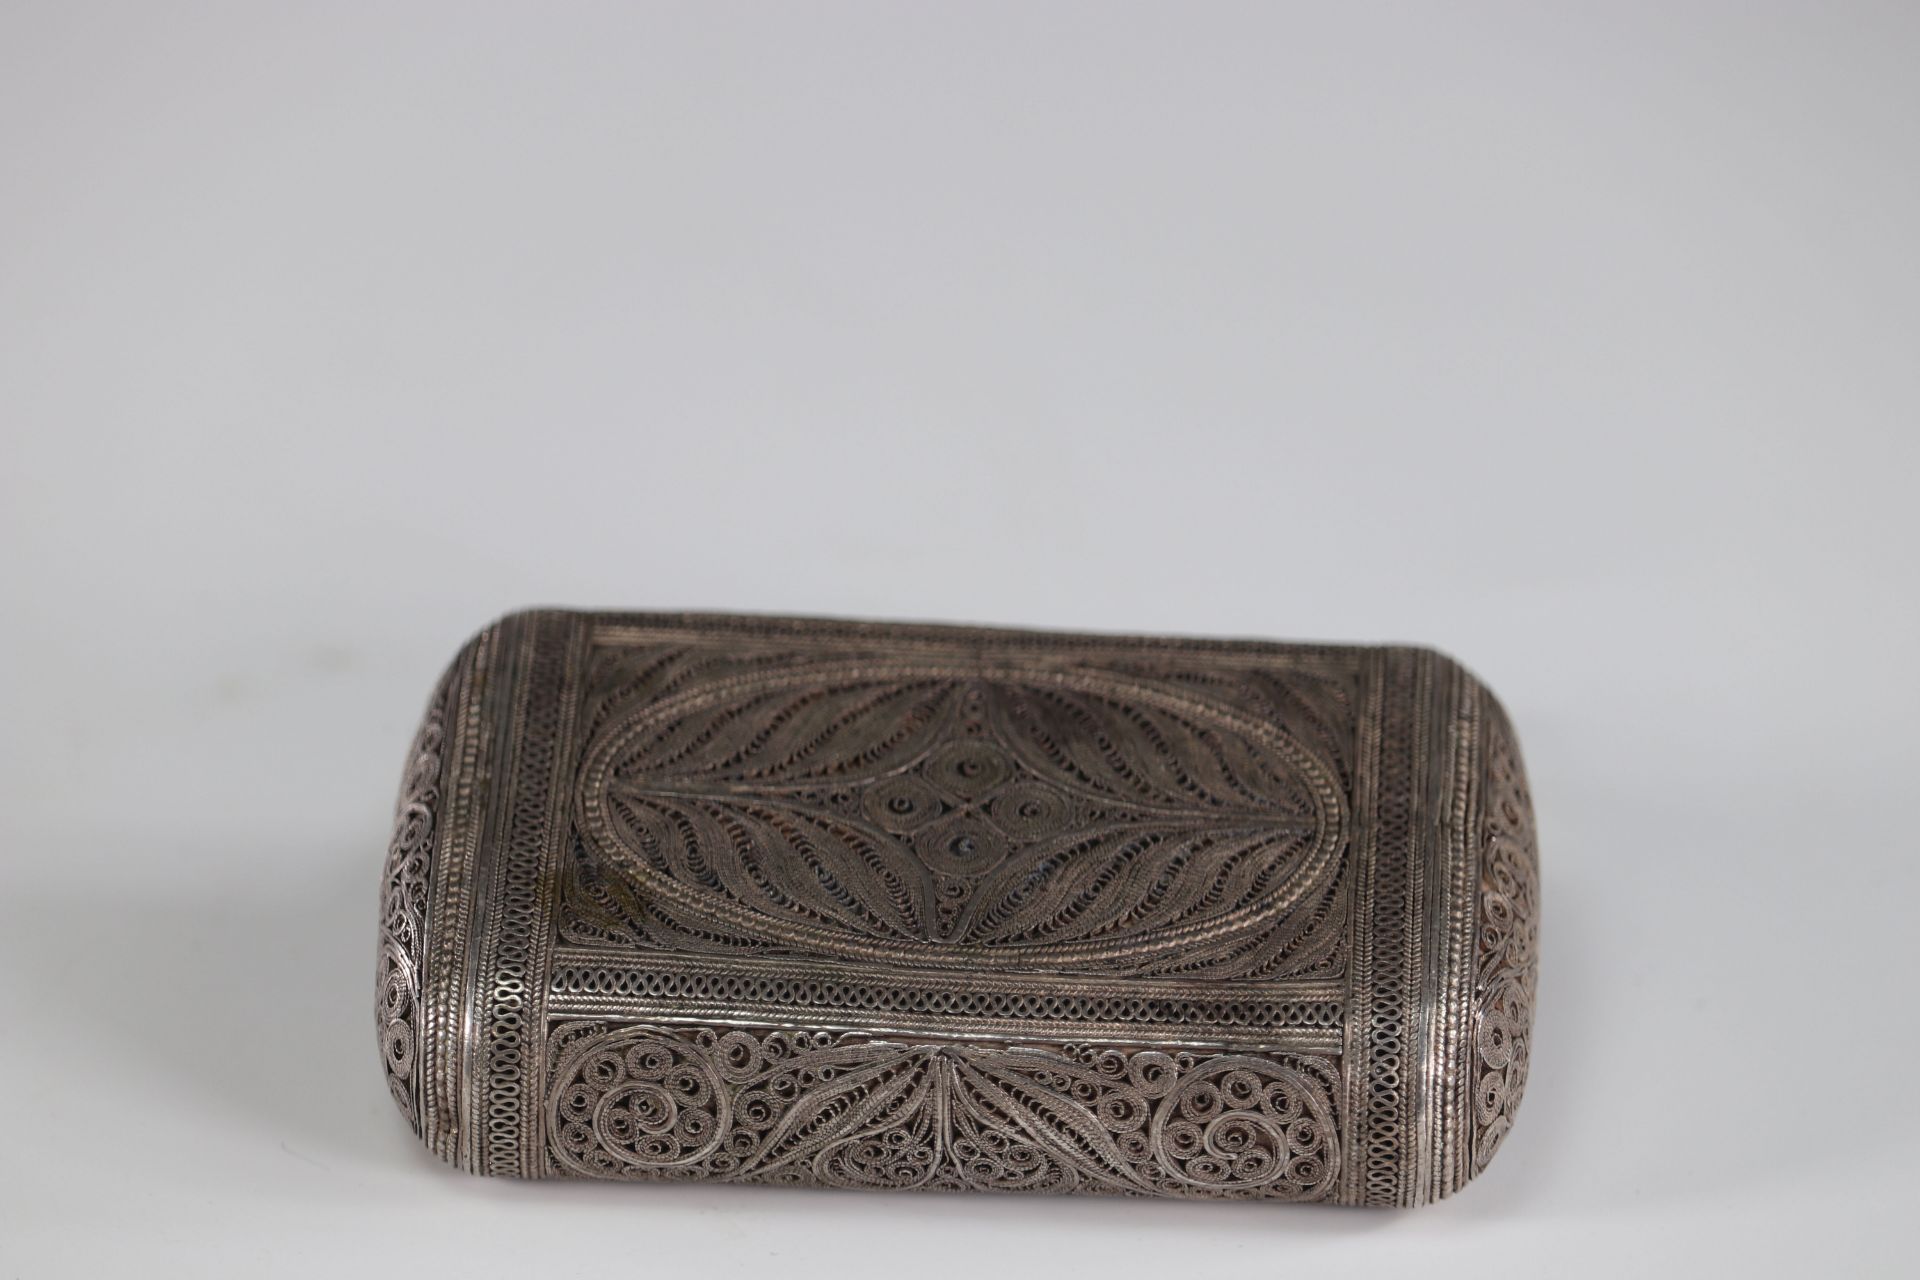 filigree silver box circa 1900 - Image 3 of 3